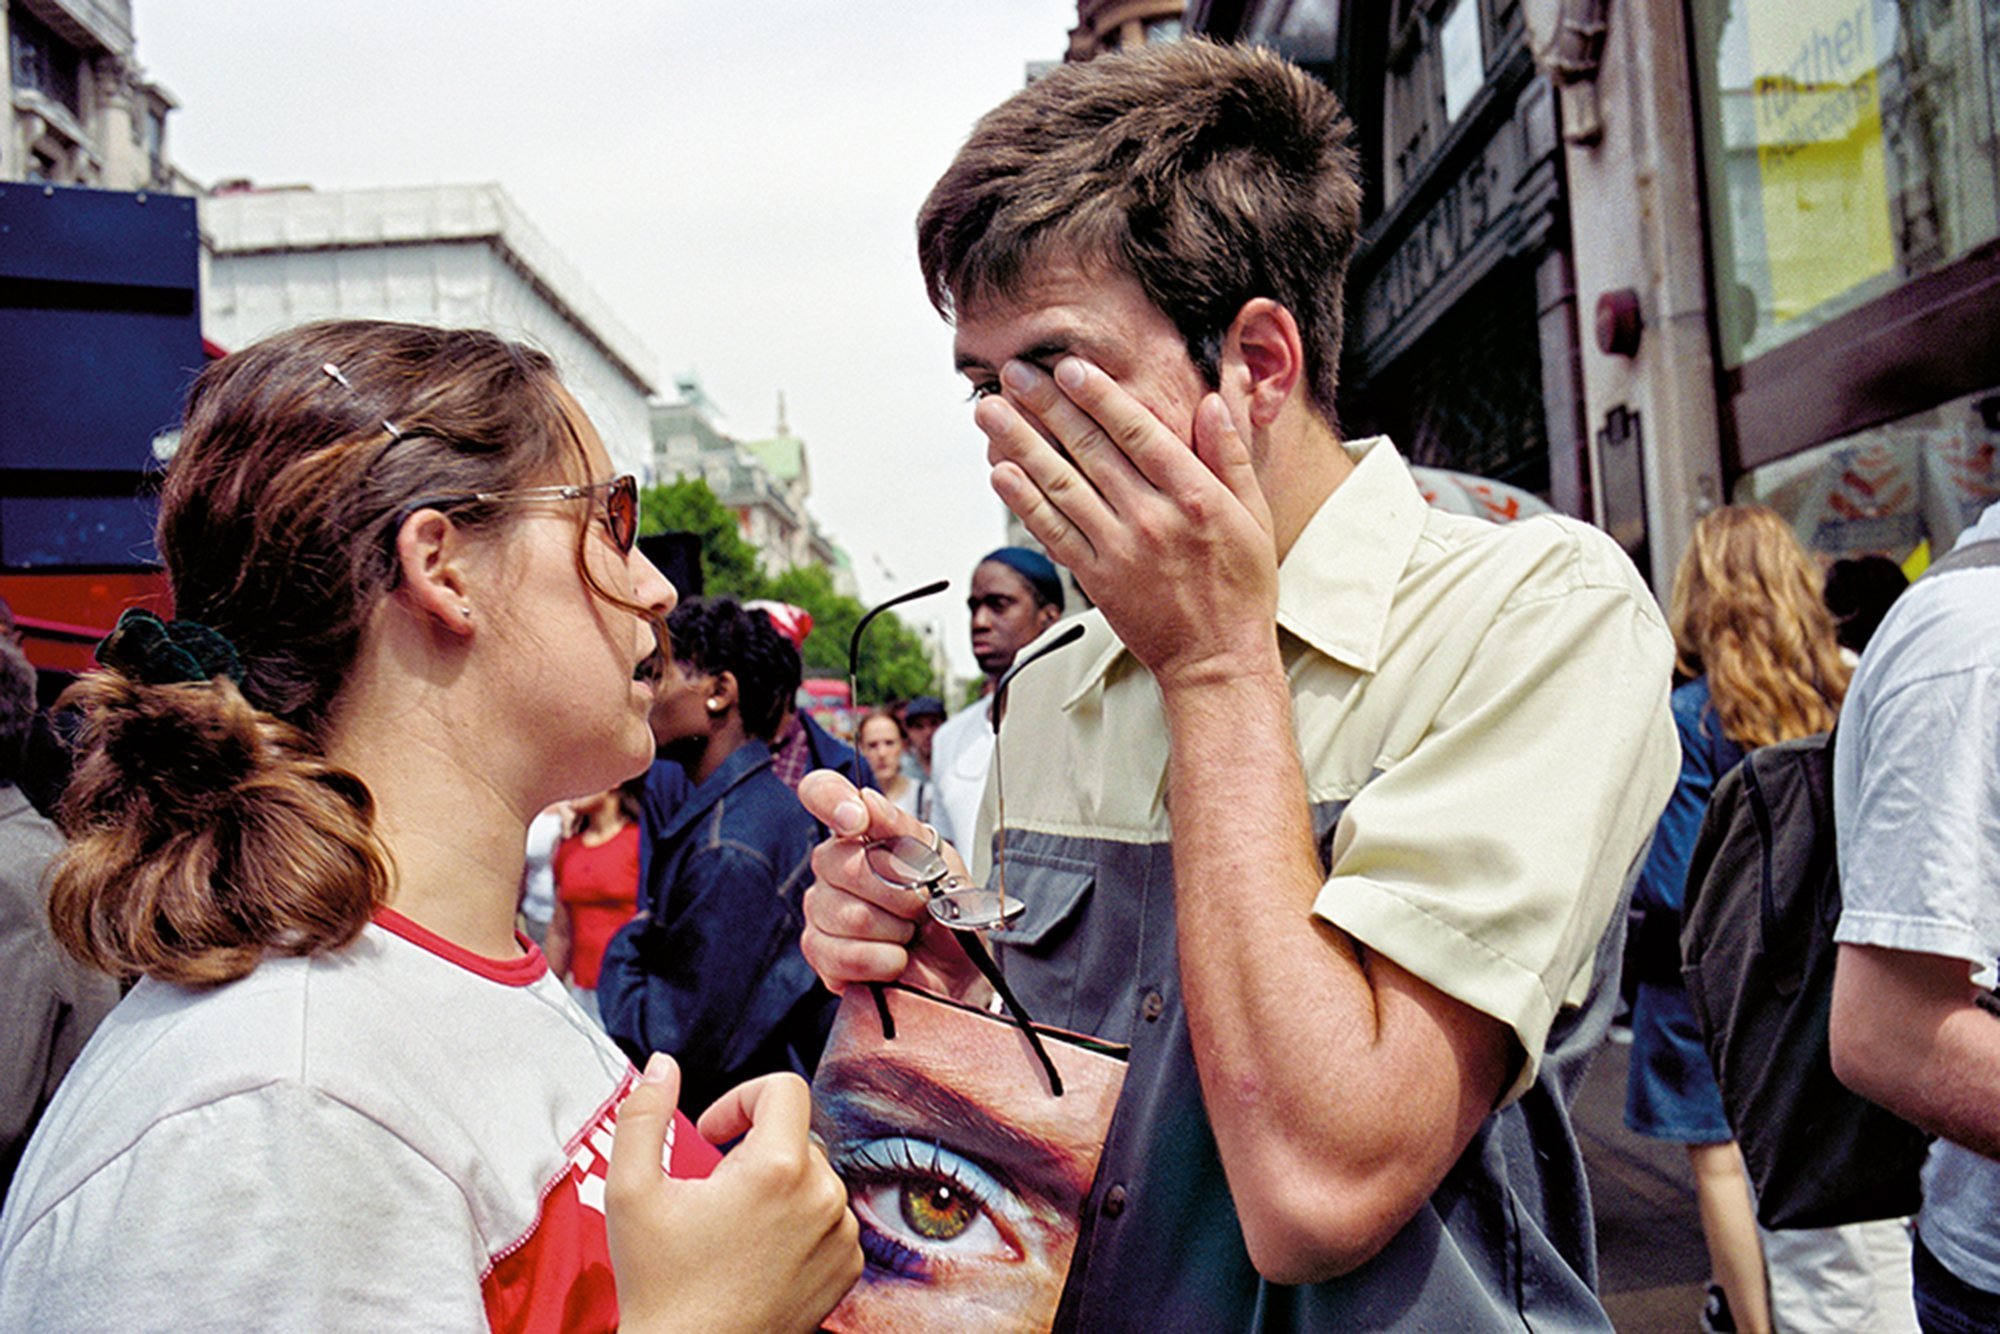 "The eye on was taken in Oxford Street (2009)" by Matt Stuart